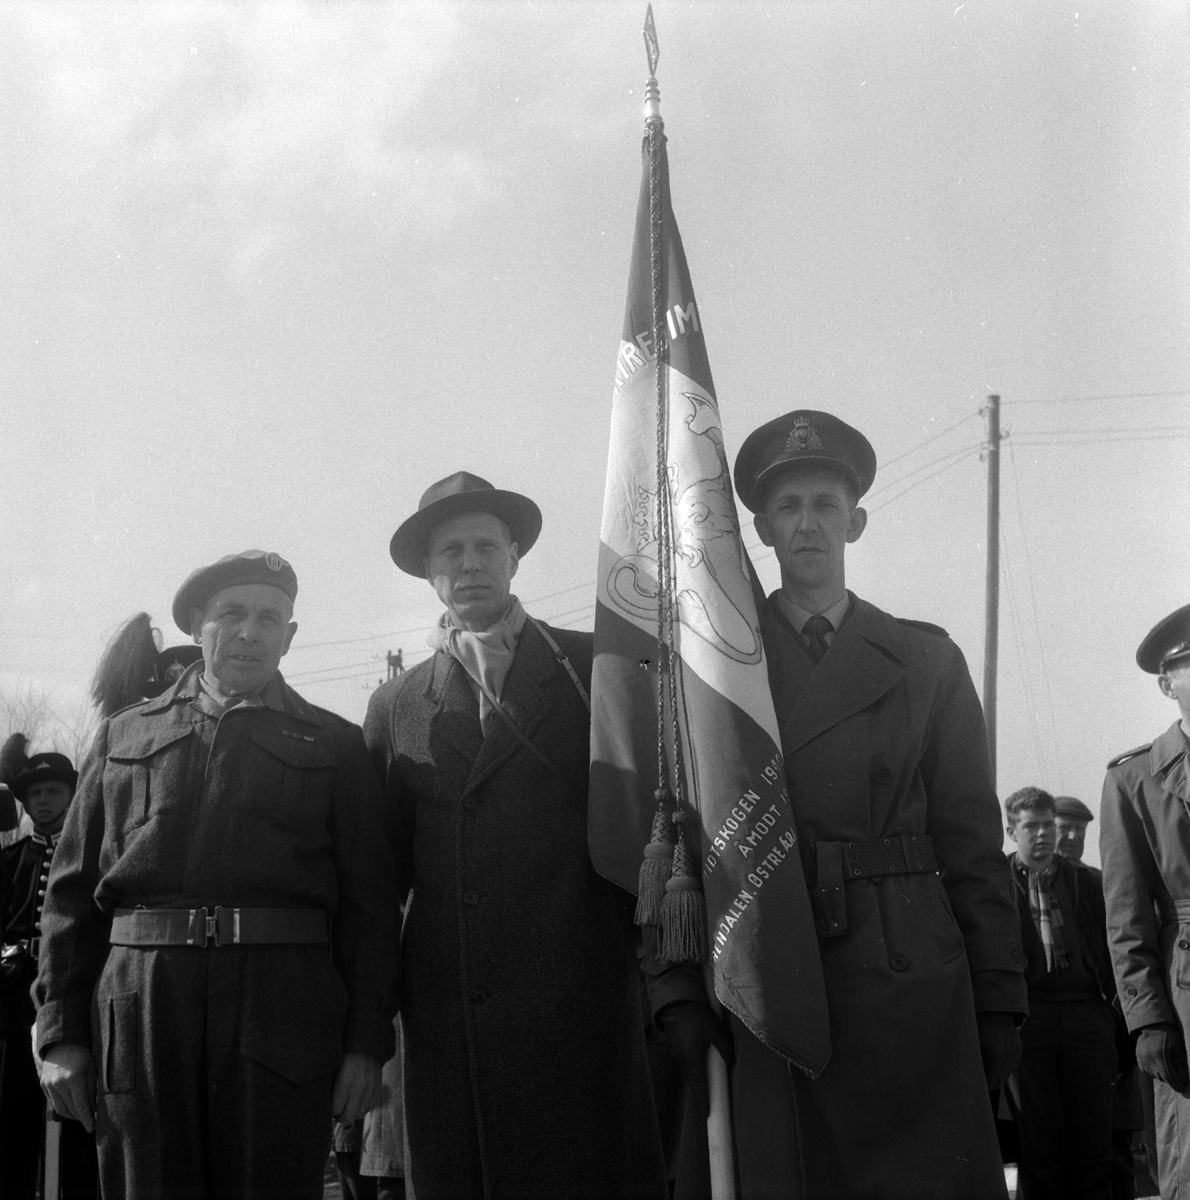 Midtskogen ved Elverum - Avduking av bauta 10.april 1960 - Krigsminnesmerke etter trefningene natt til 10.april 1940.